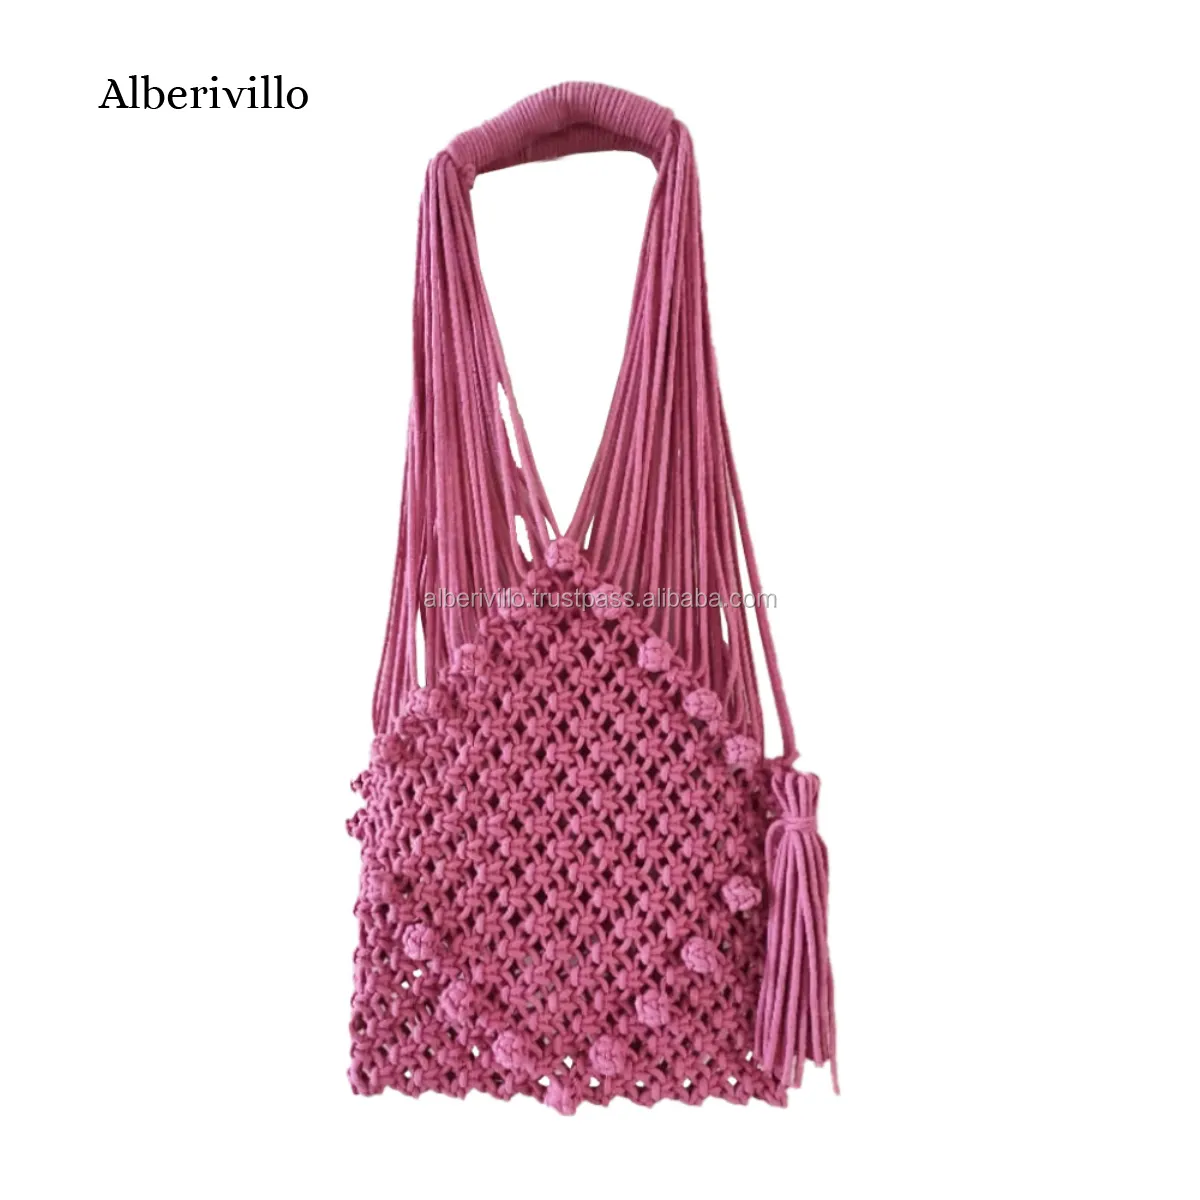 Macrame Shopping Handbag Ladies Bags Boho Macrame Crochet Bag